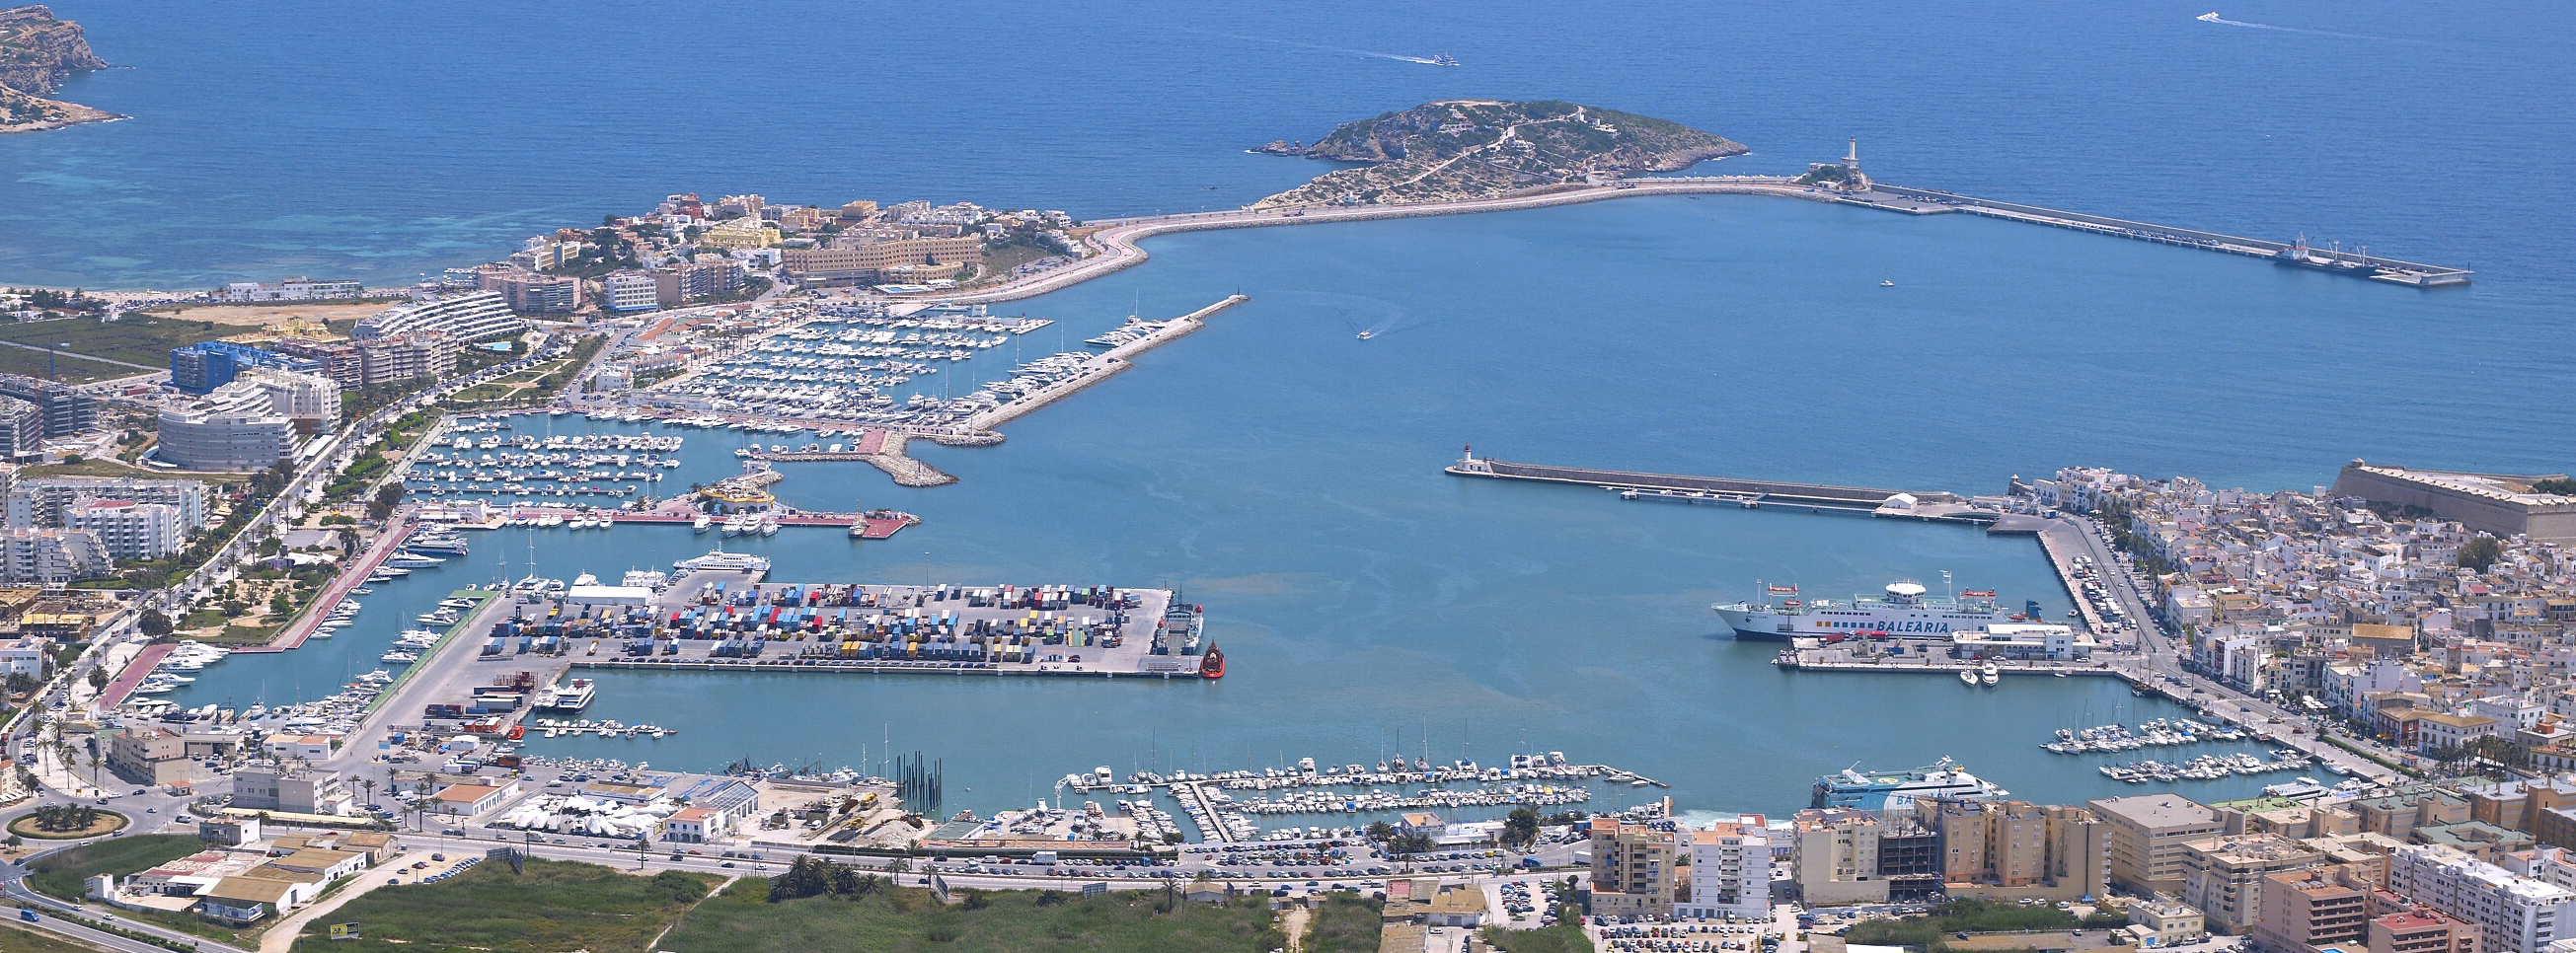 Der Verwaltungsrat der APB beschließt die Ausschreibung der Betreibung der vom Jachtclub Ibiza verwalteten Einrichtungen